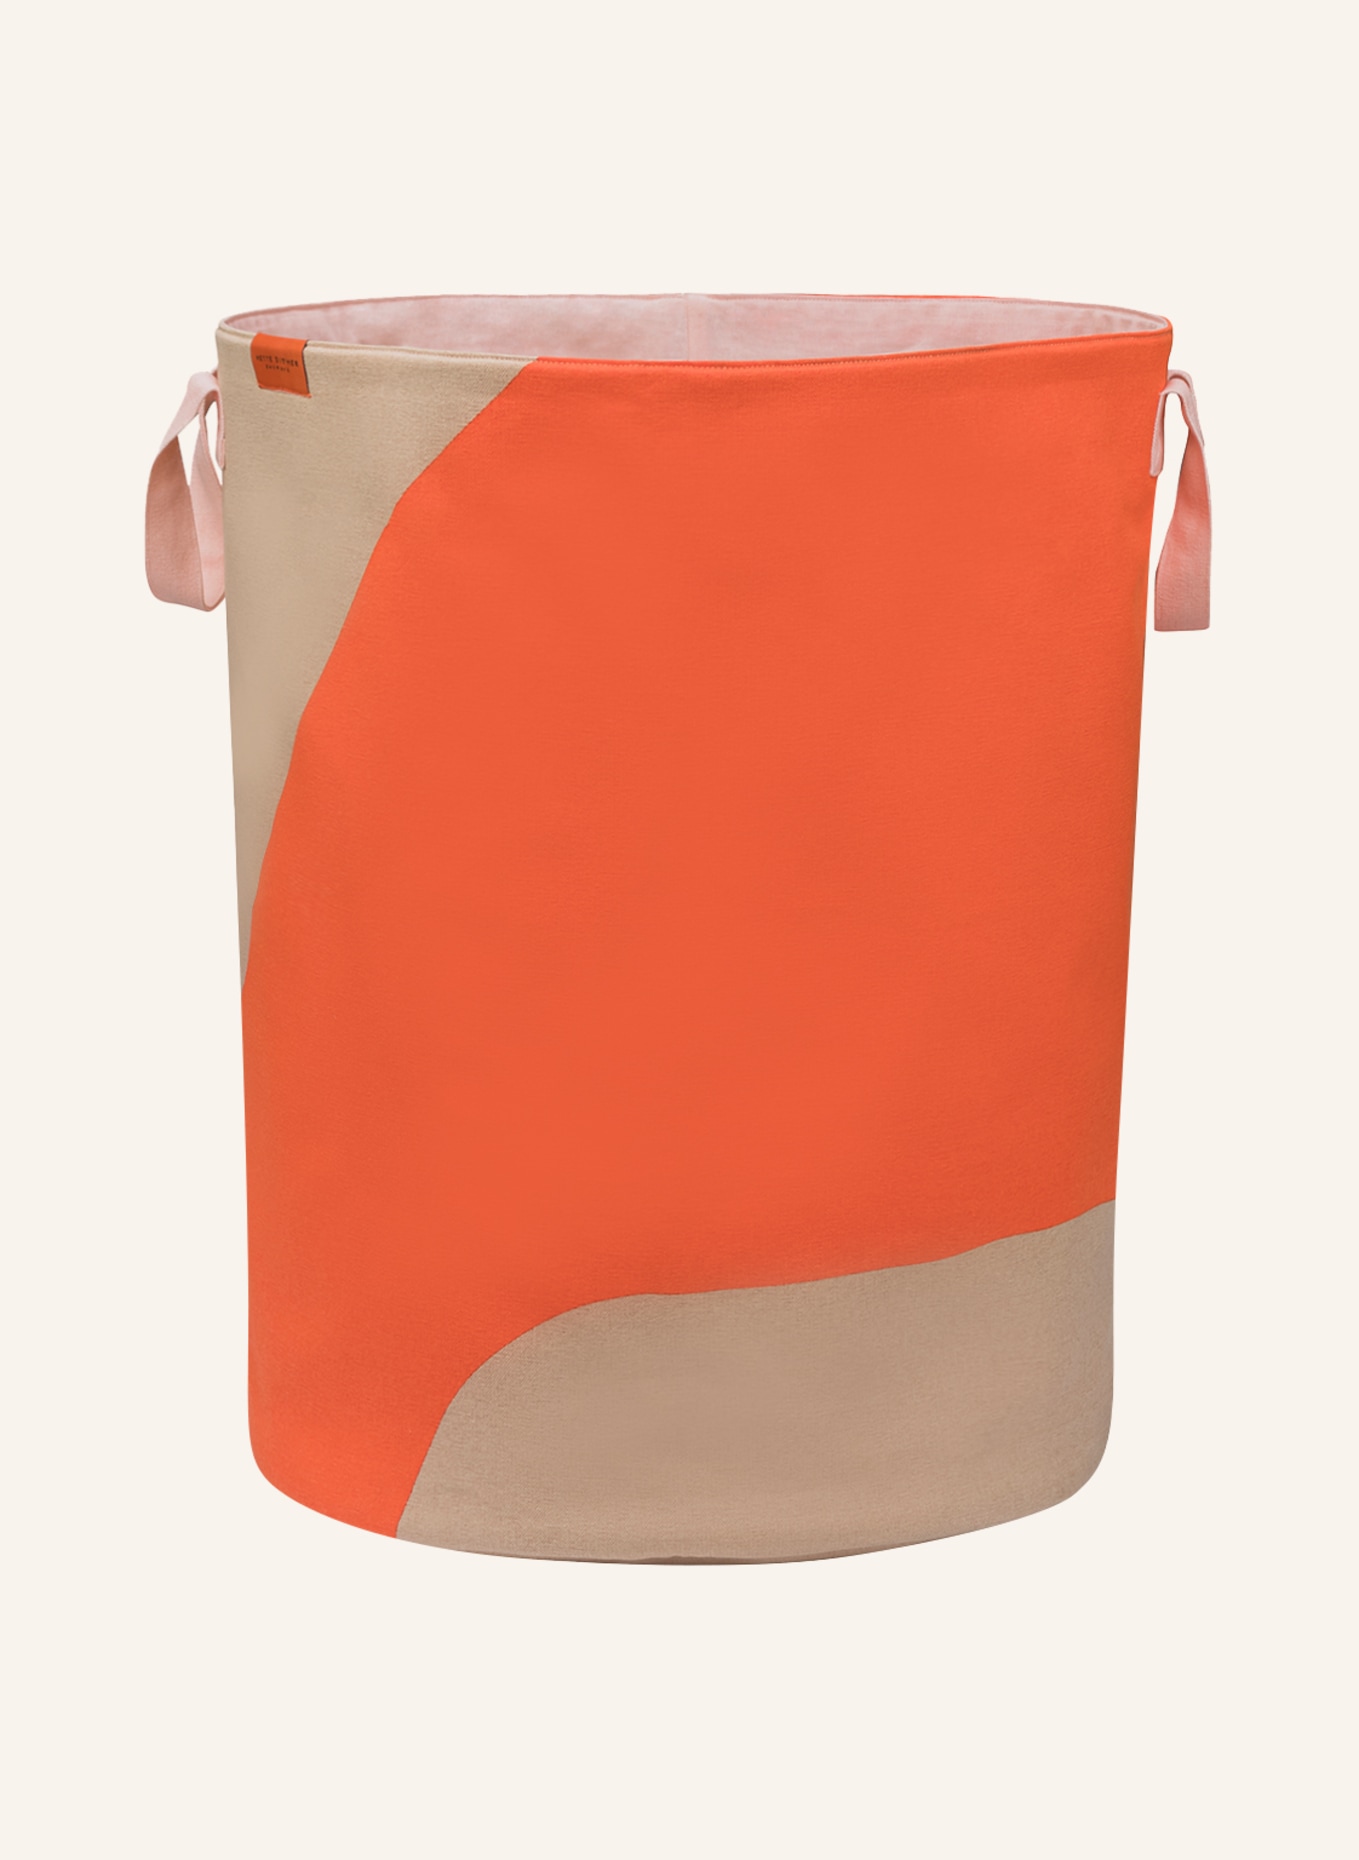 METTE DITMER Laundry basket NOVA ARTE, Color: ORANGE/ BEIGE (Image 1)